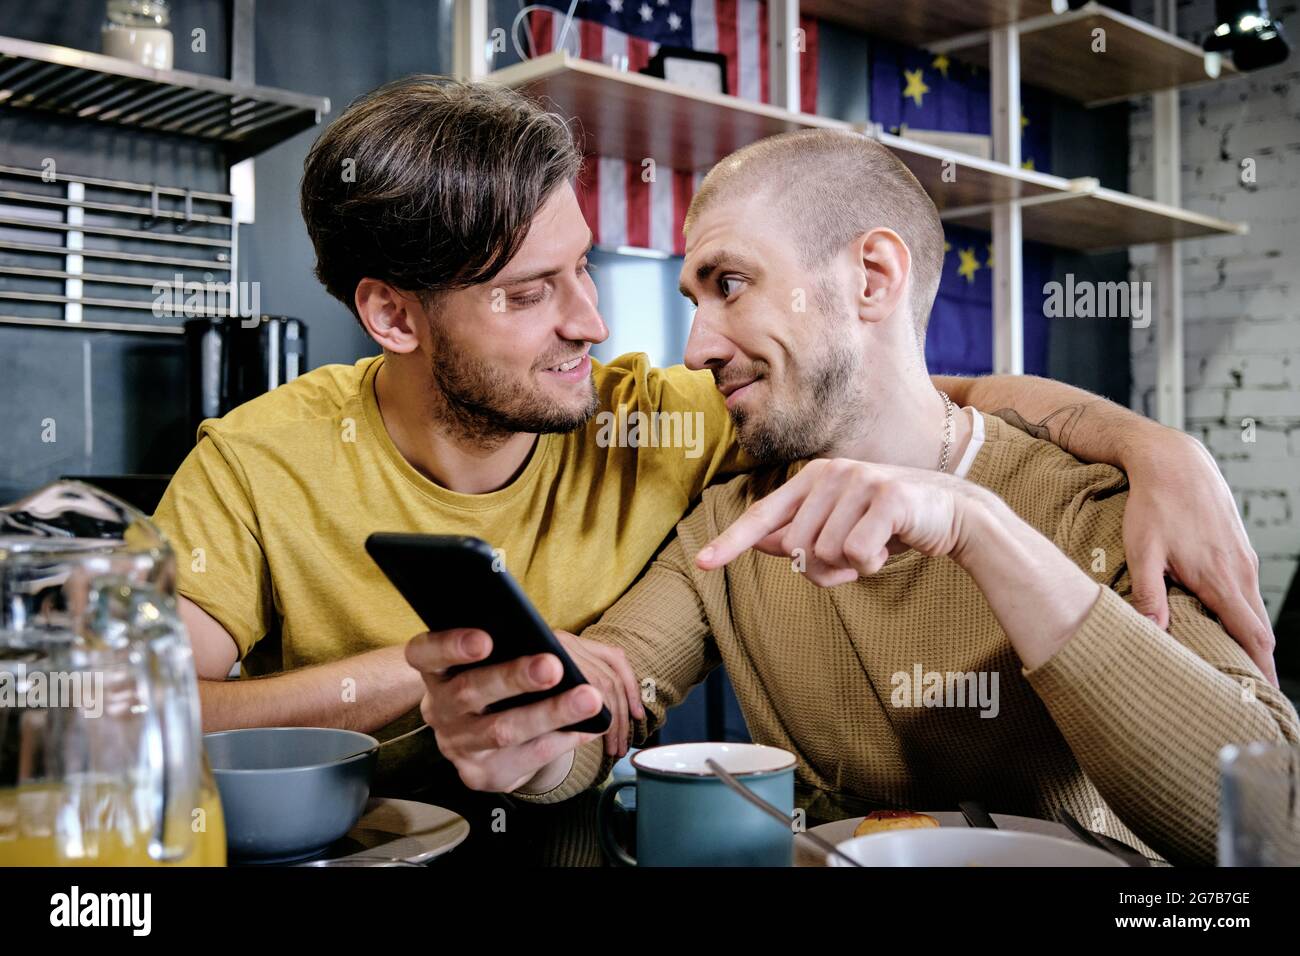 Junge Schwule Männer Fotos Und Bildmaterial In Hoher Auflösung Seite 2 Alamy